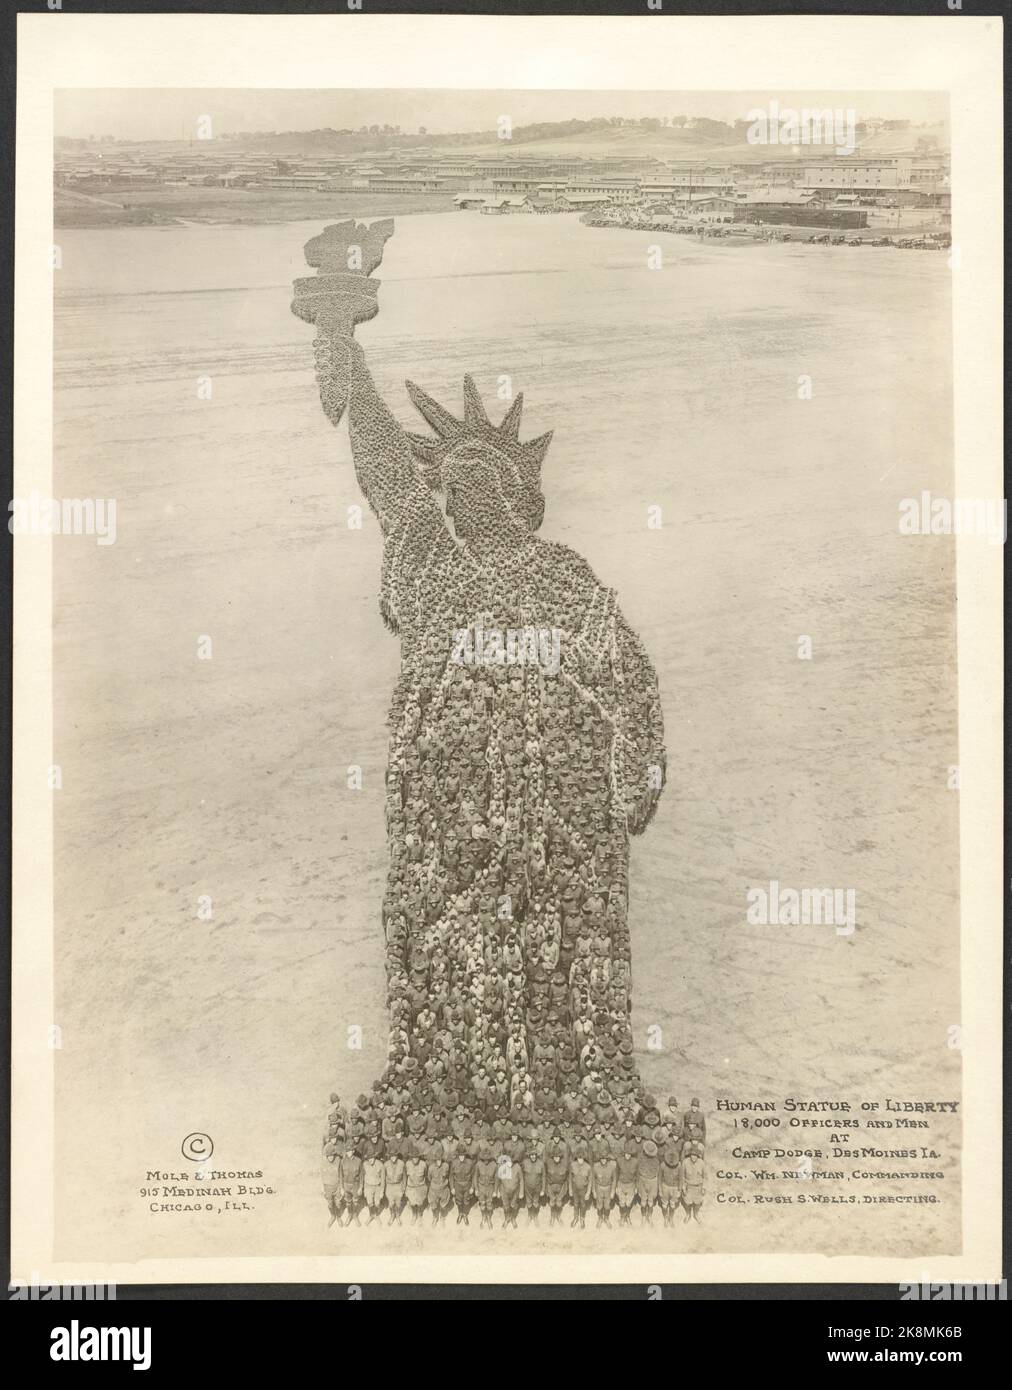 Statue de la liberté humaine; 18 000 officiers et hommes au Camp Dodge, des Moines, Iowa, .; Col. Wm. Newman, commandant; Col. Rush S. Wells, dirigeant - 1918 Banque D'Images